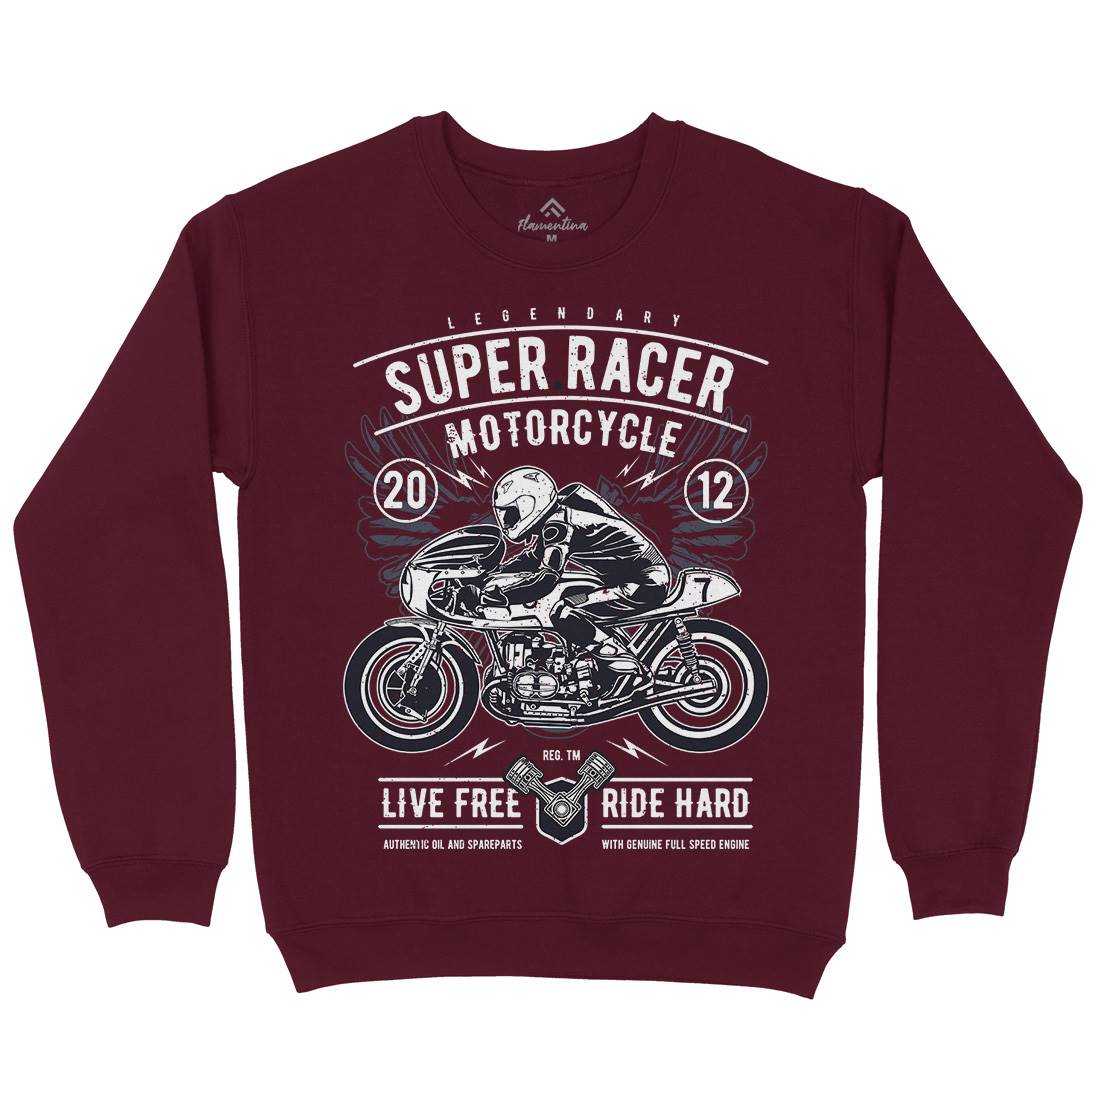 Super Racer Kids Crew Neck Sweatshirt Motorcycles A768